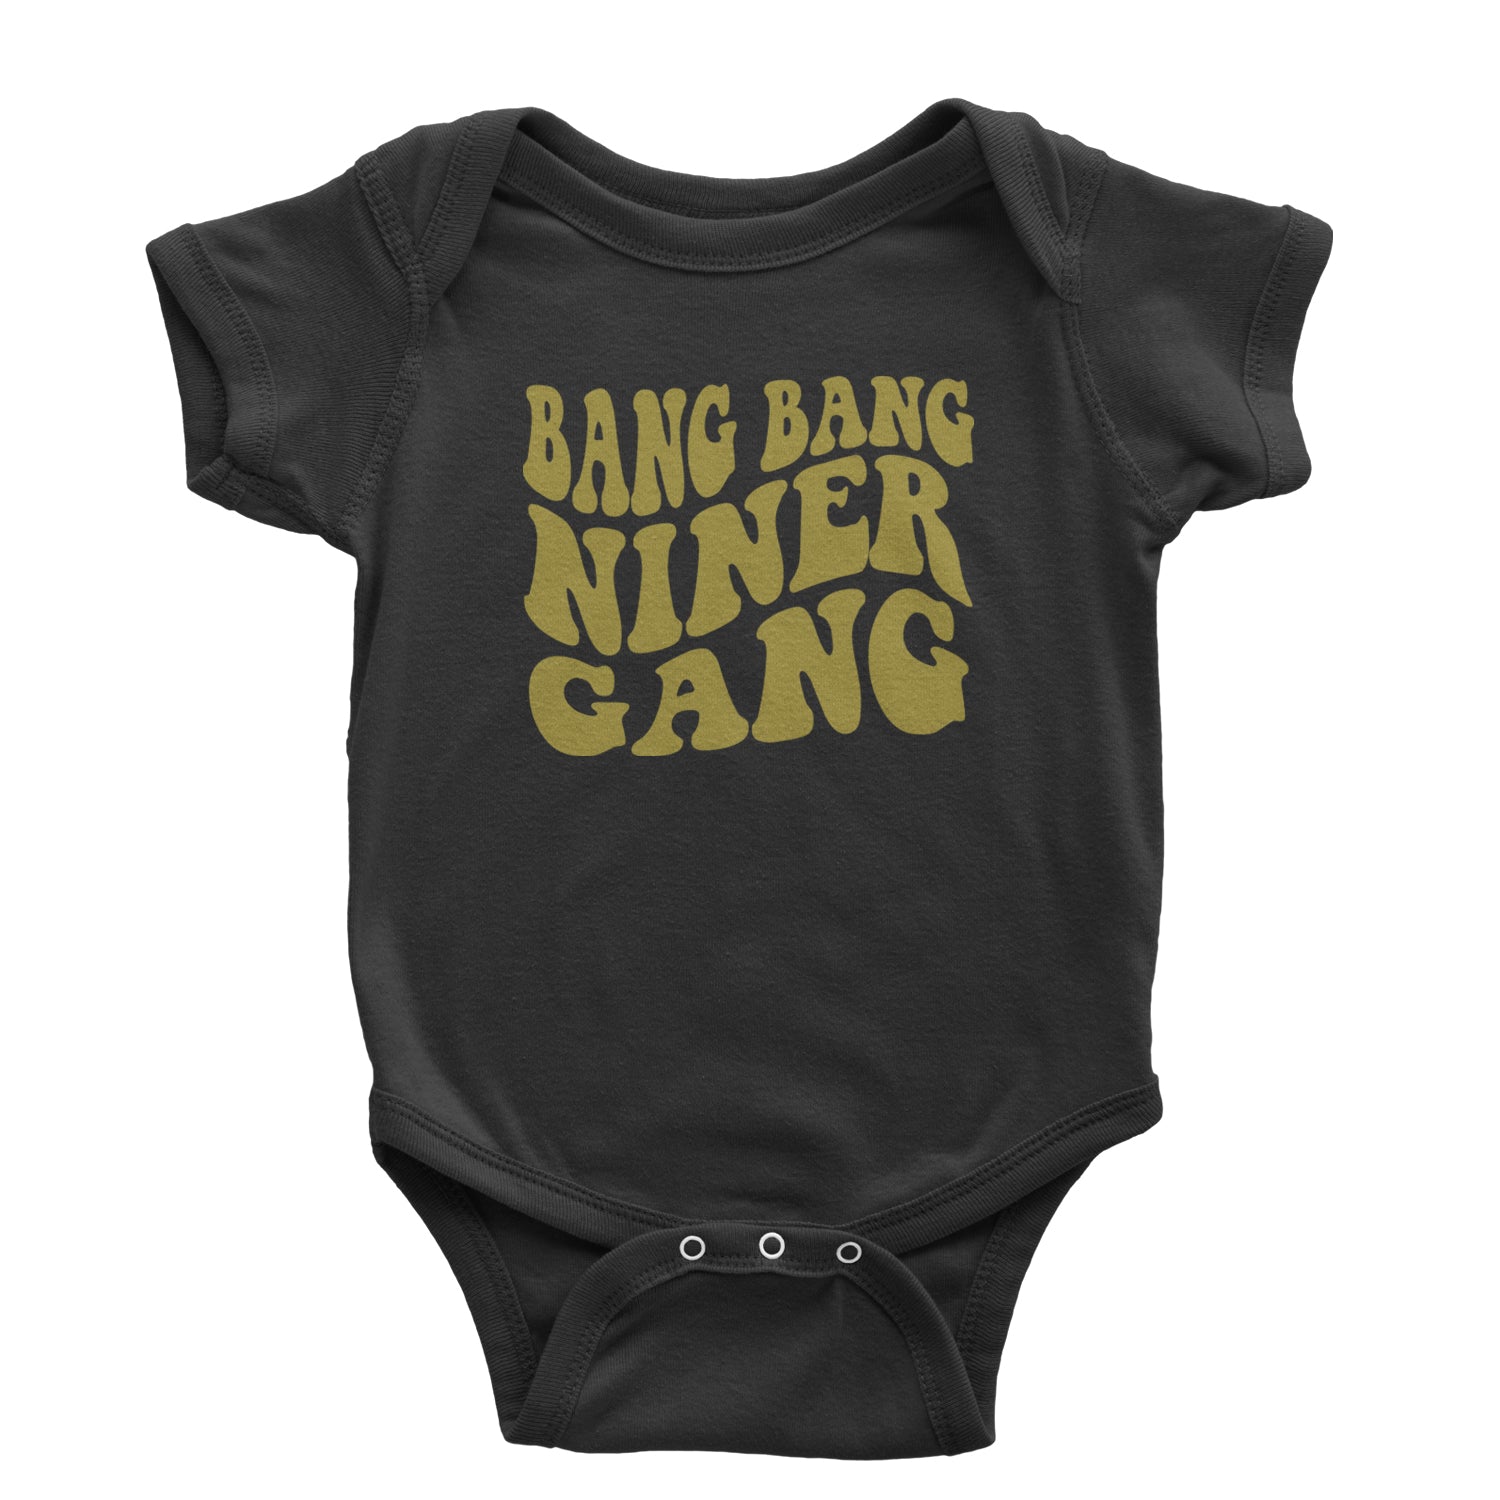 WAVE Bang Bang Niner Gang San Francisco Infant One-Piece Romper Bodysuit and Toddler T-shirt